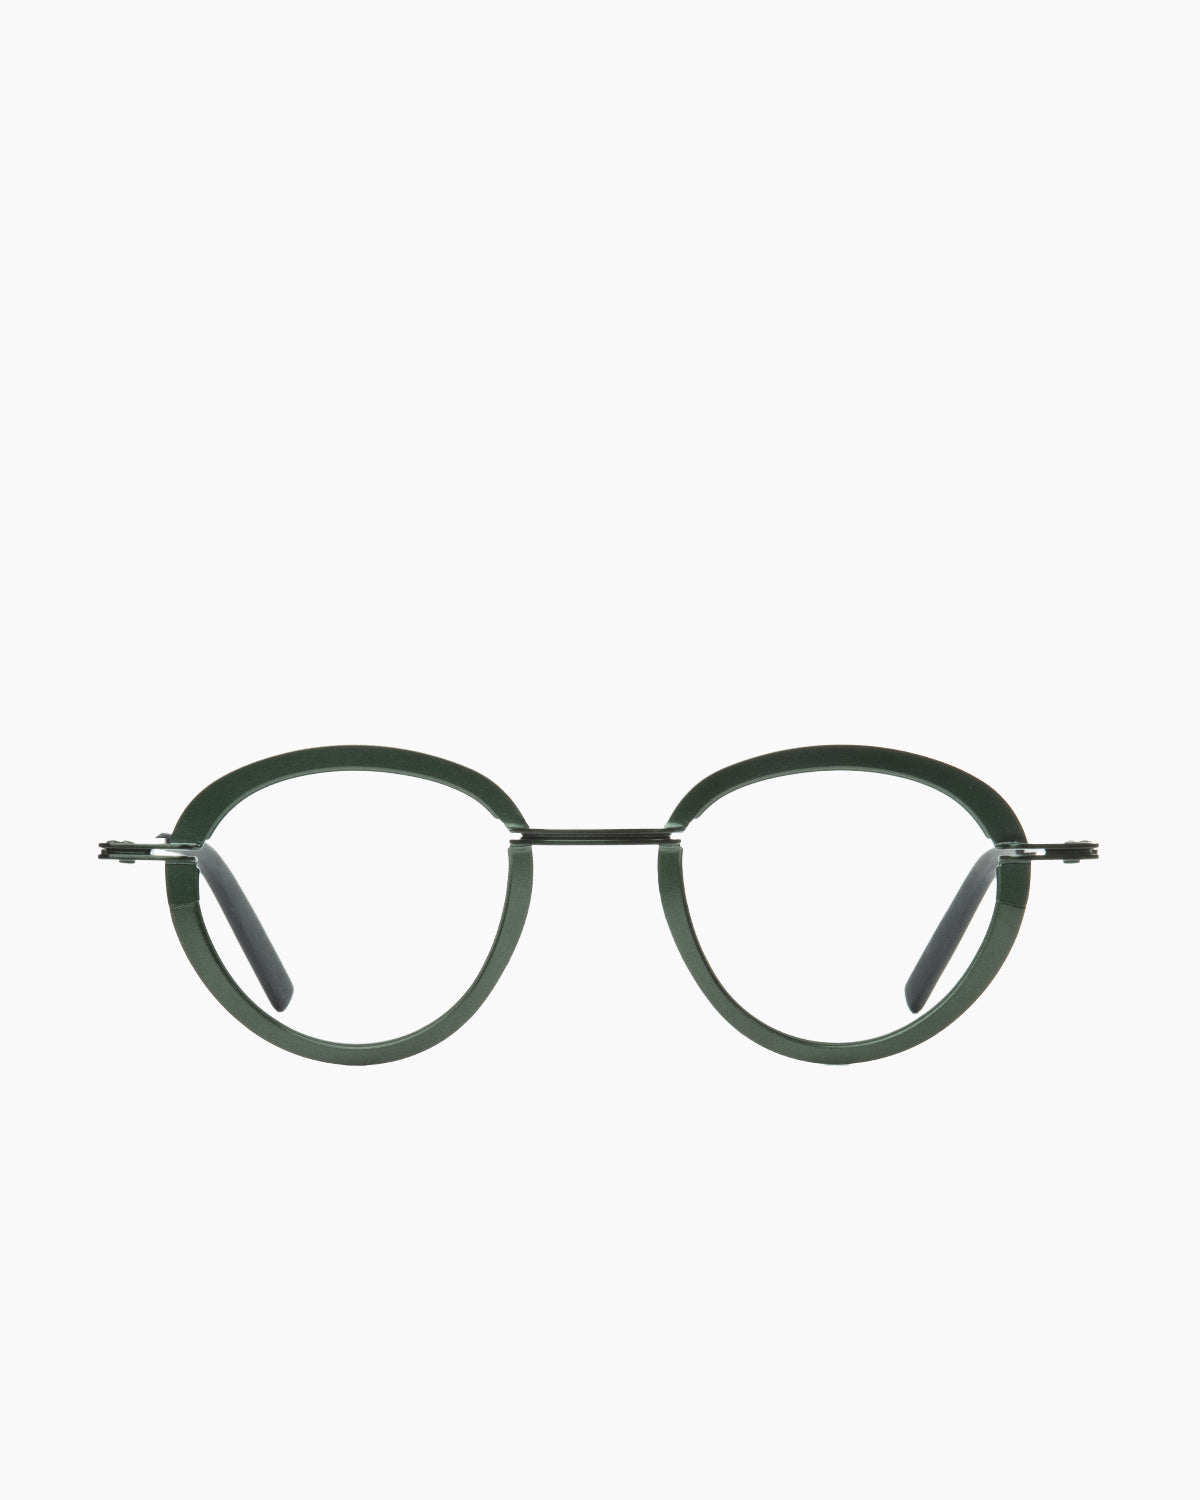 Theo - Sensational - 508 | Bar à lunettes:  Marie-Sophie Dion